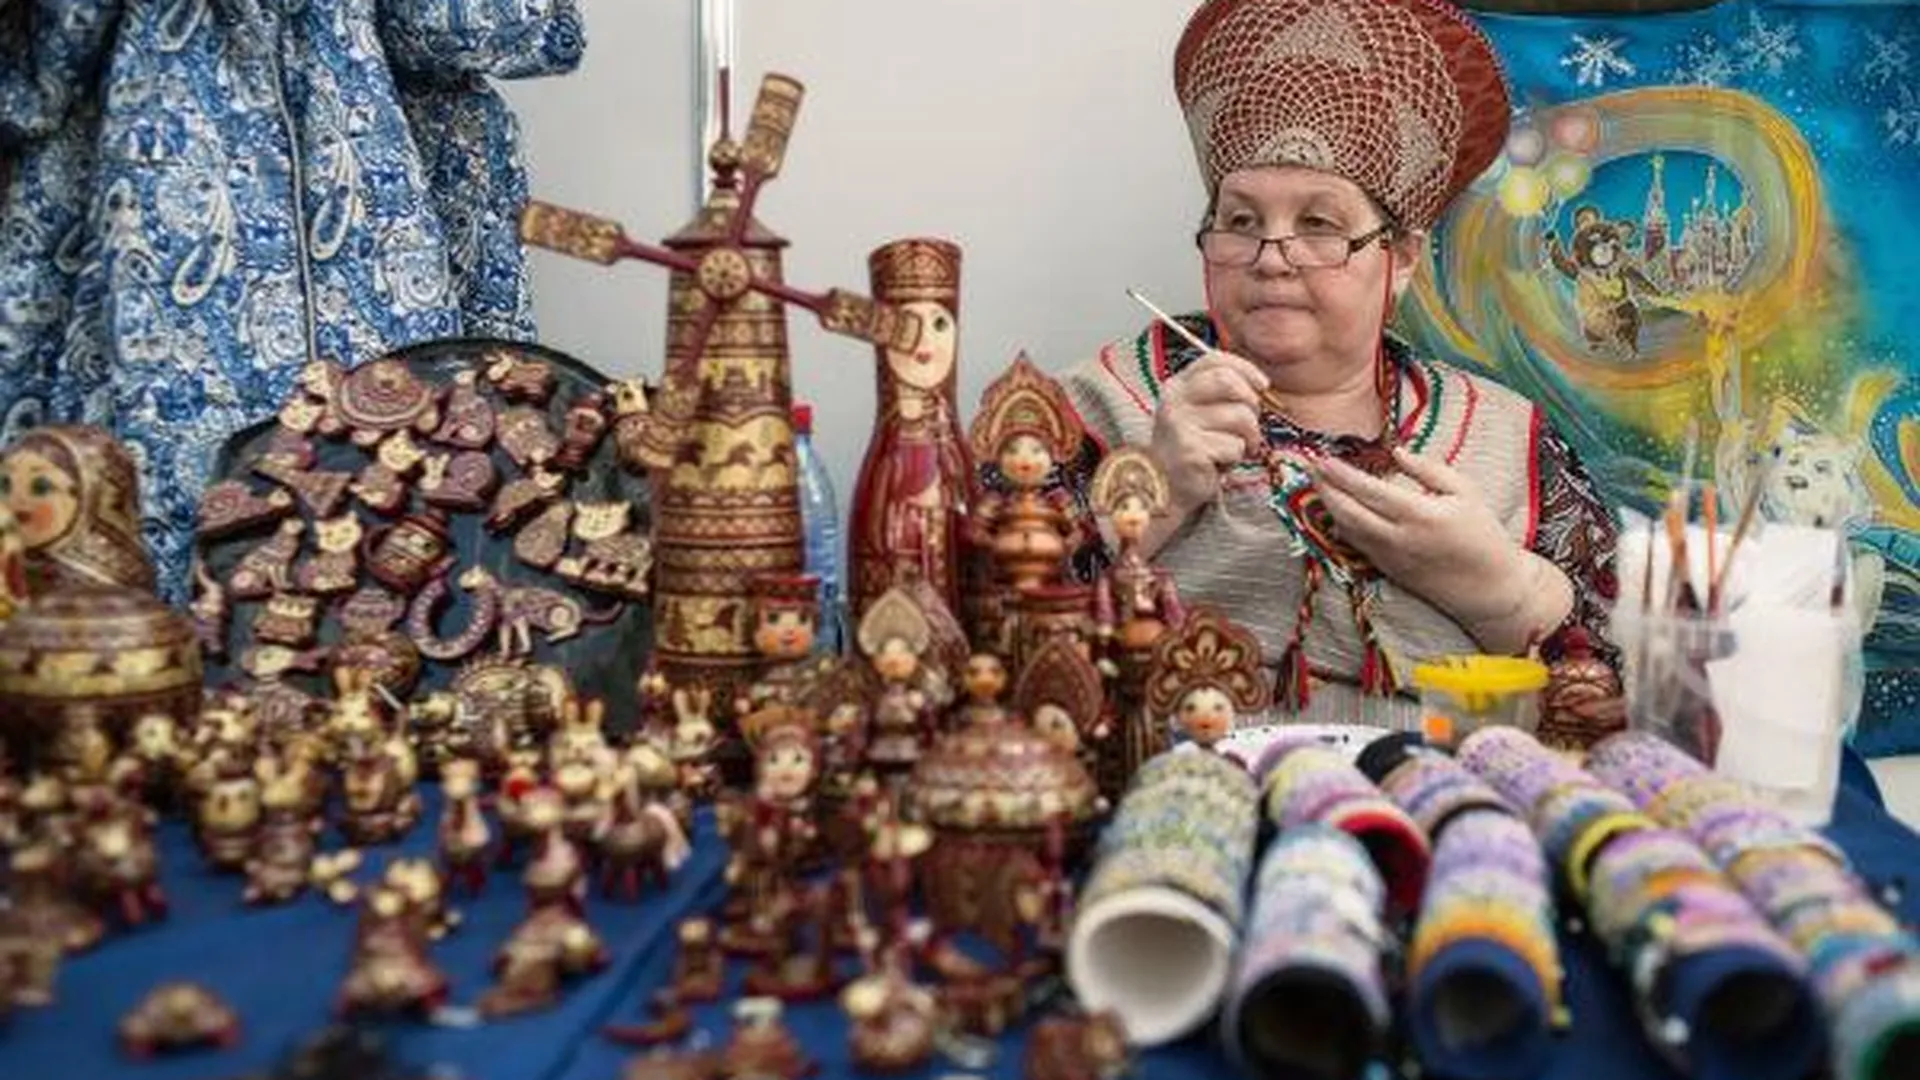 О традициях народов России расскажут на фестивале в Ленинском районе